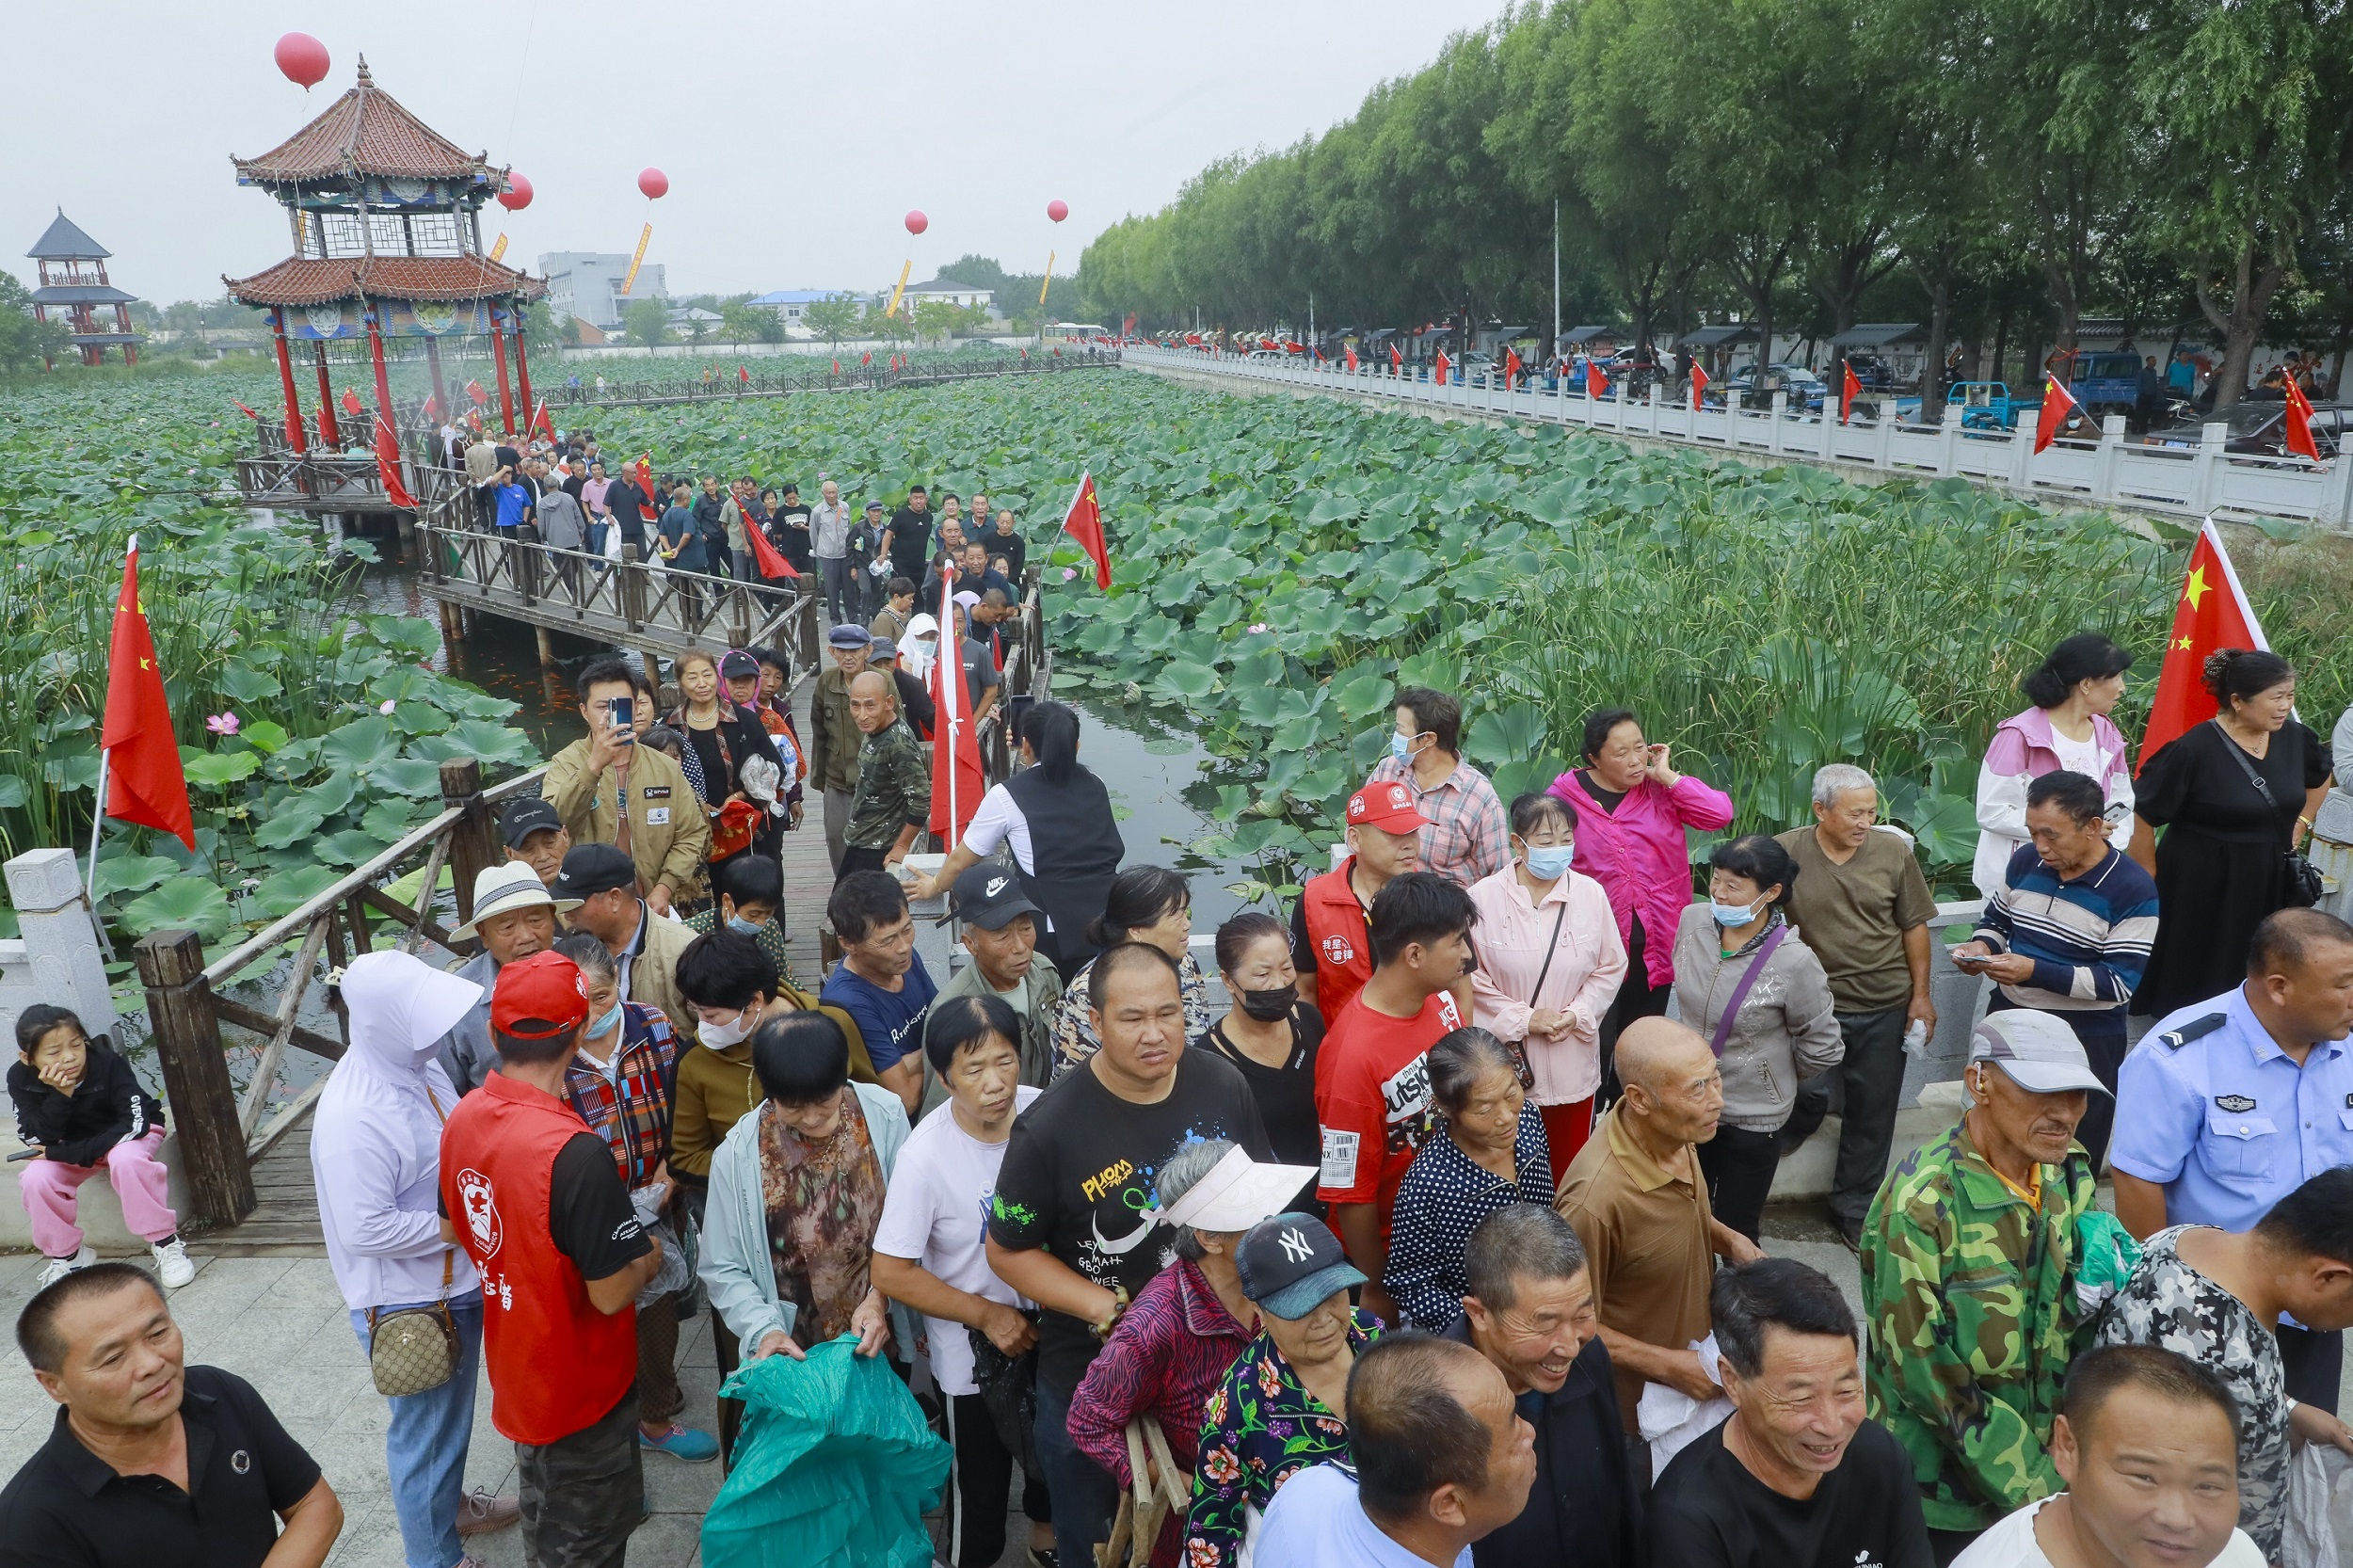 瀋陽小鎮「豐漁節」有「中國農民豐收節」百個鄉村文化活動榮耀